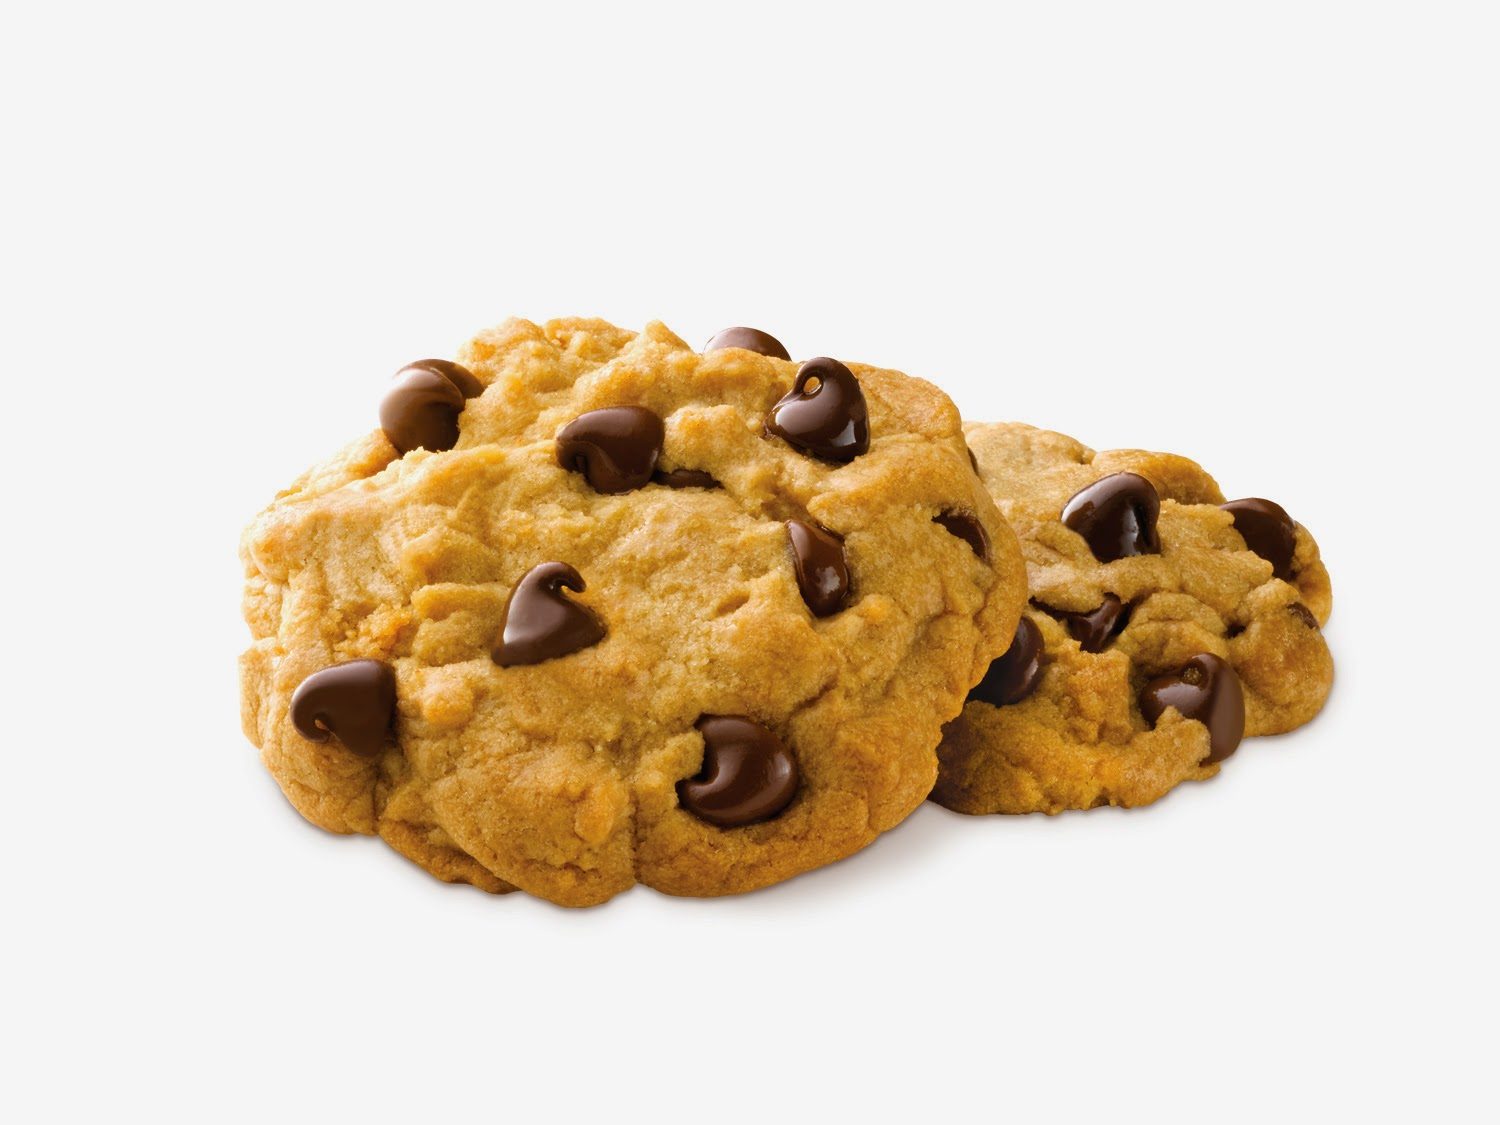 chocchipcookies-9696092